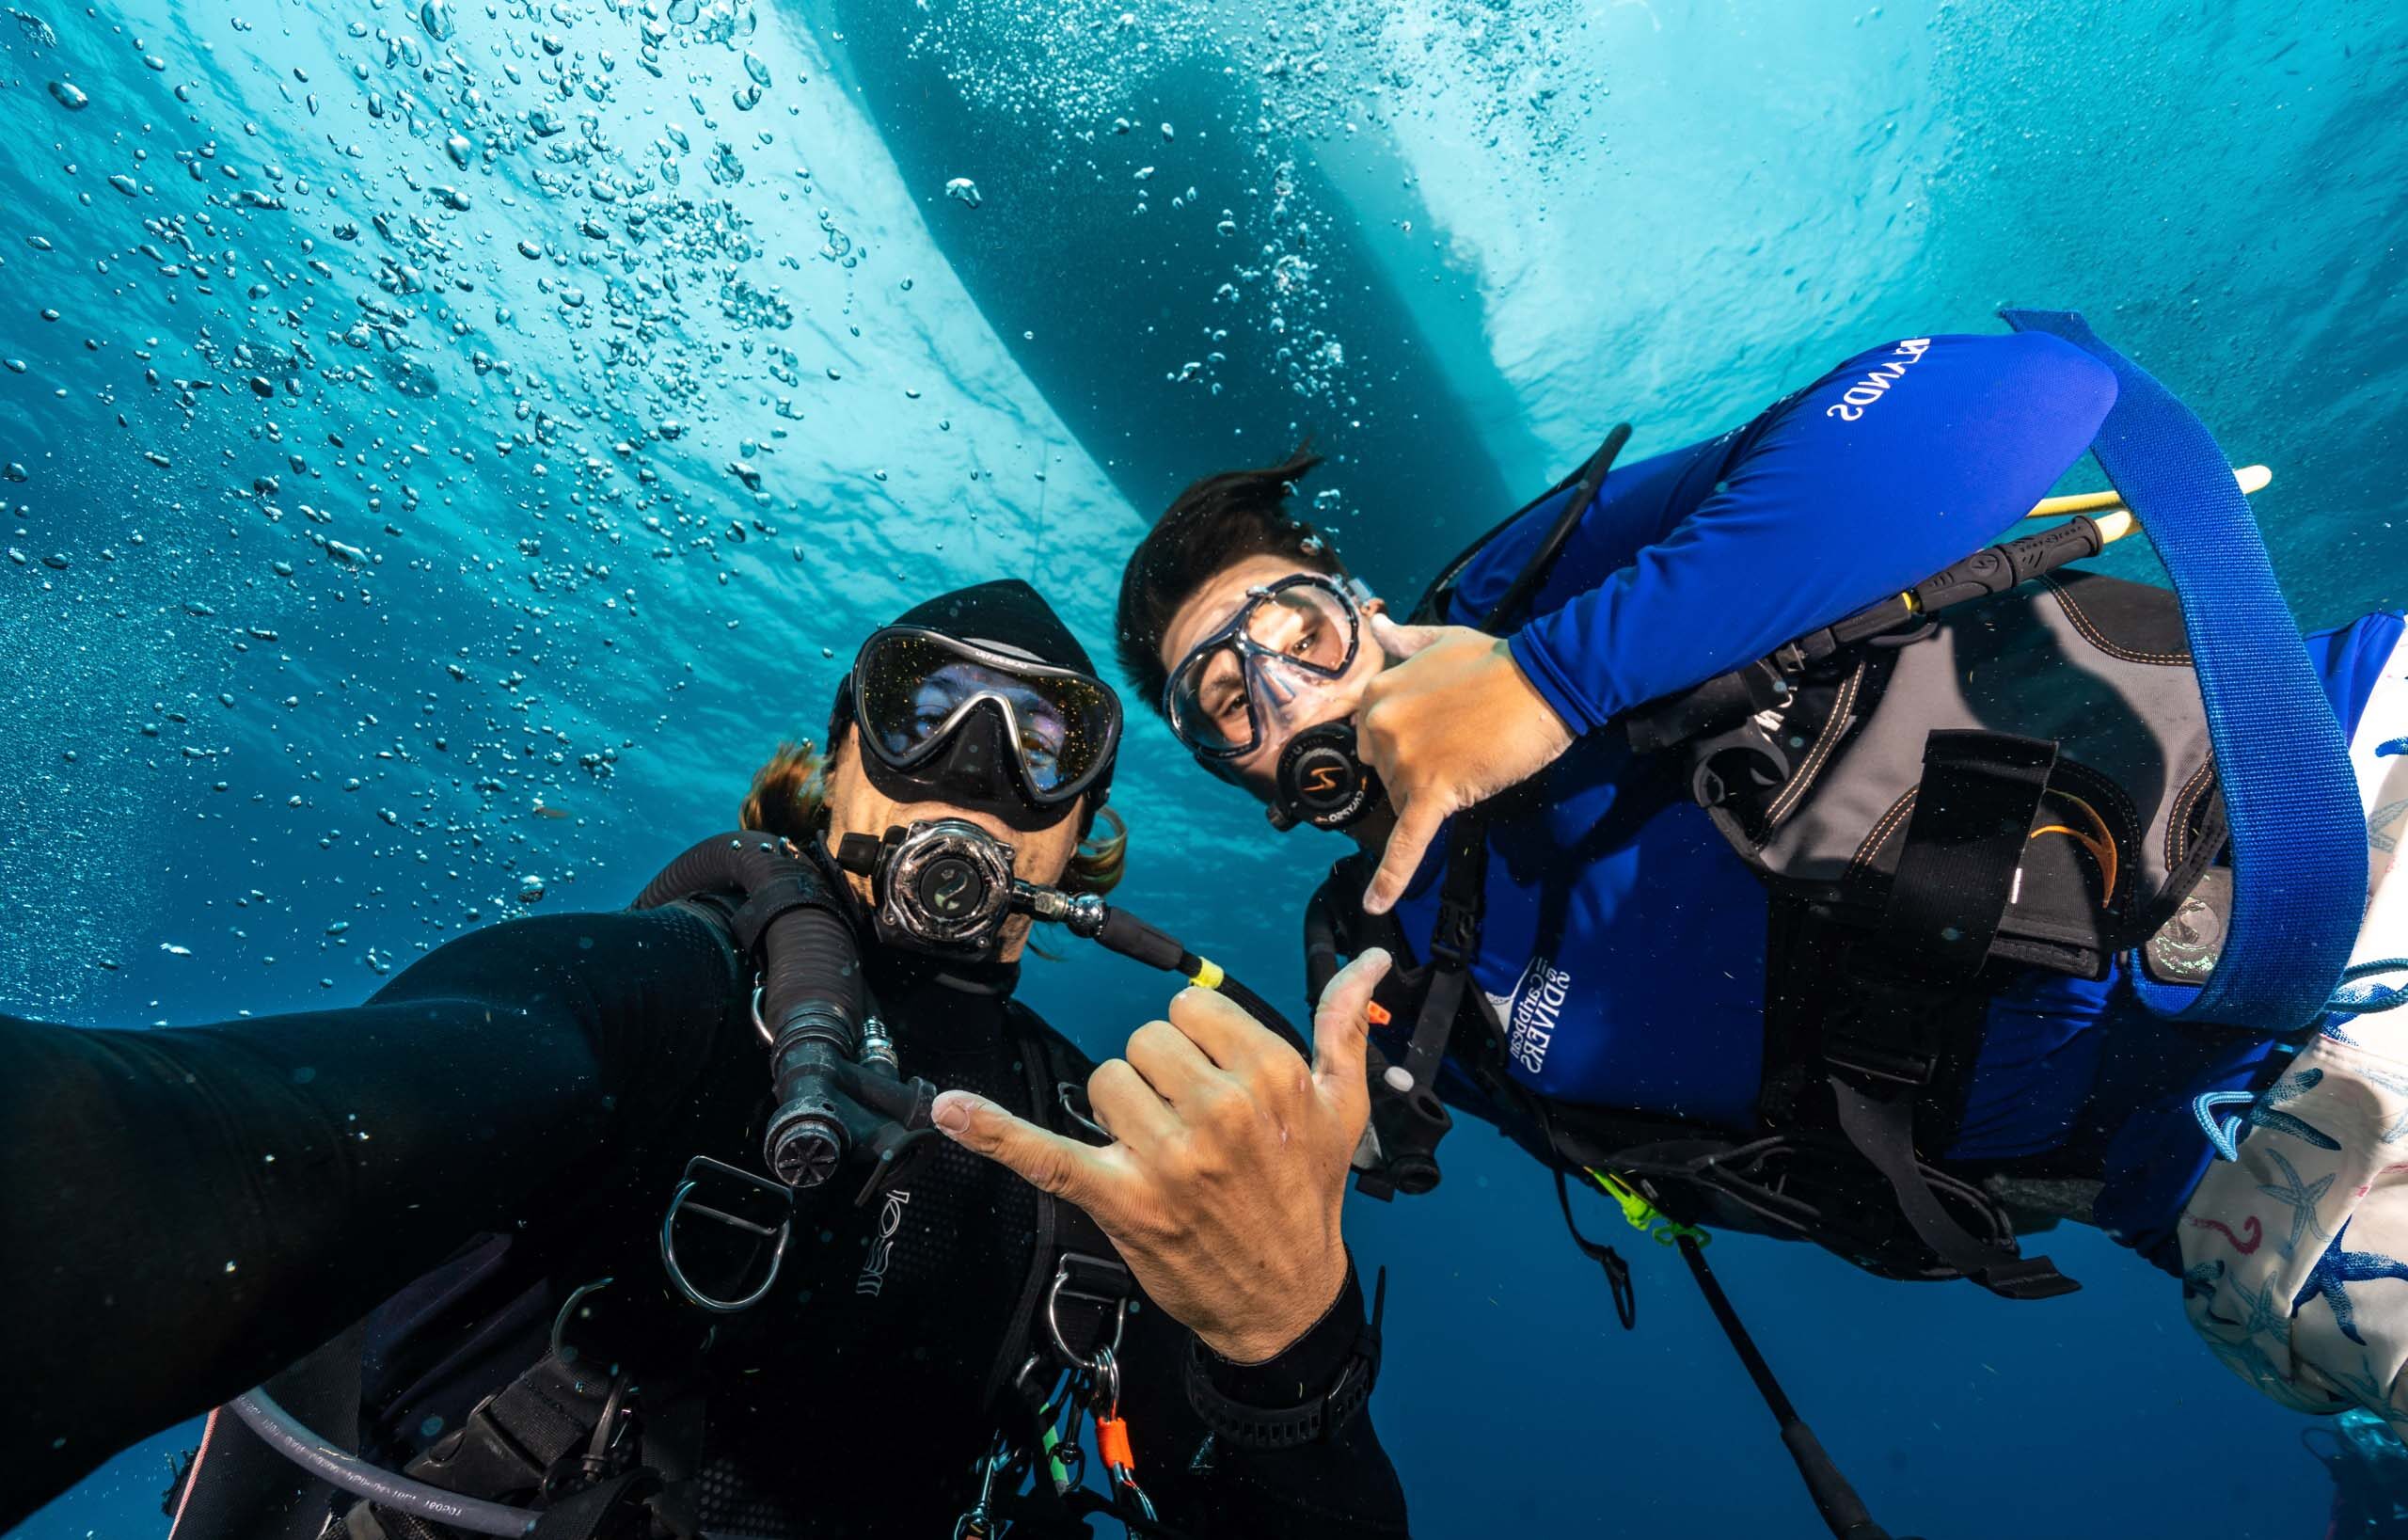 Two scuba divers taking a selfie underwater.